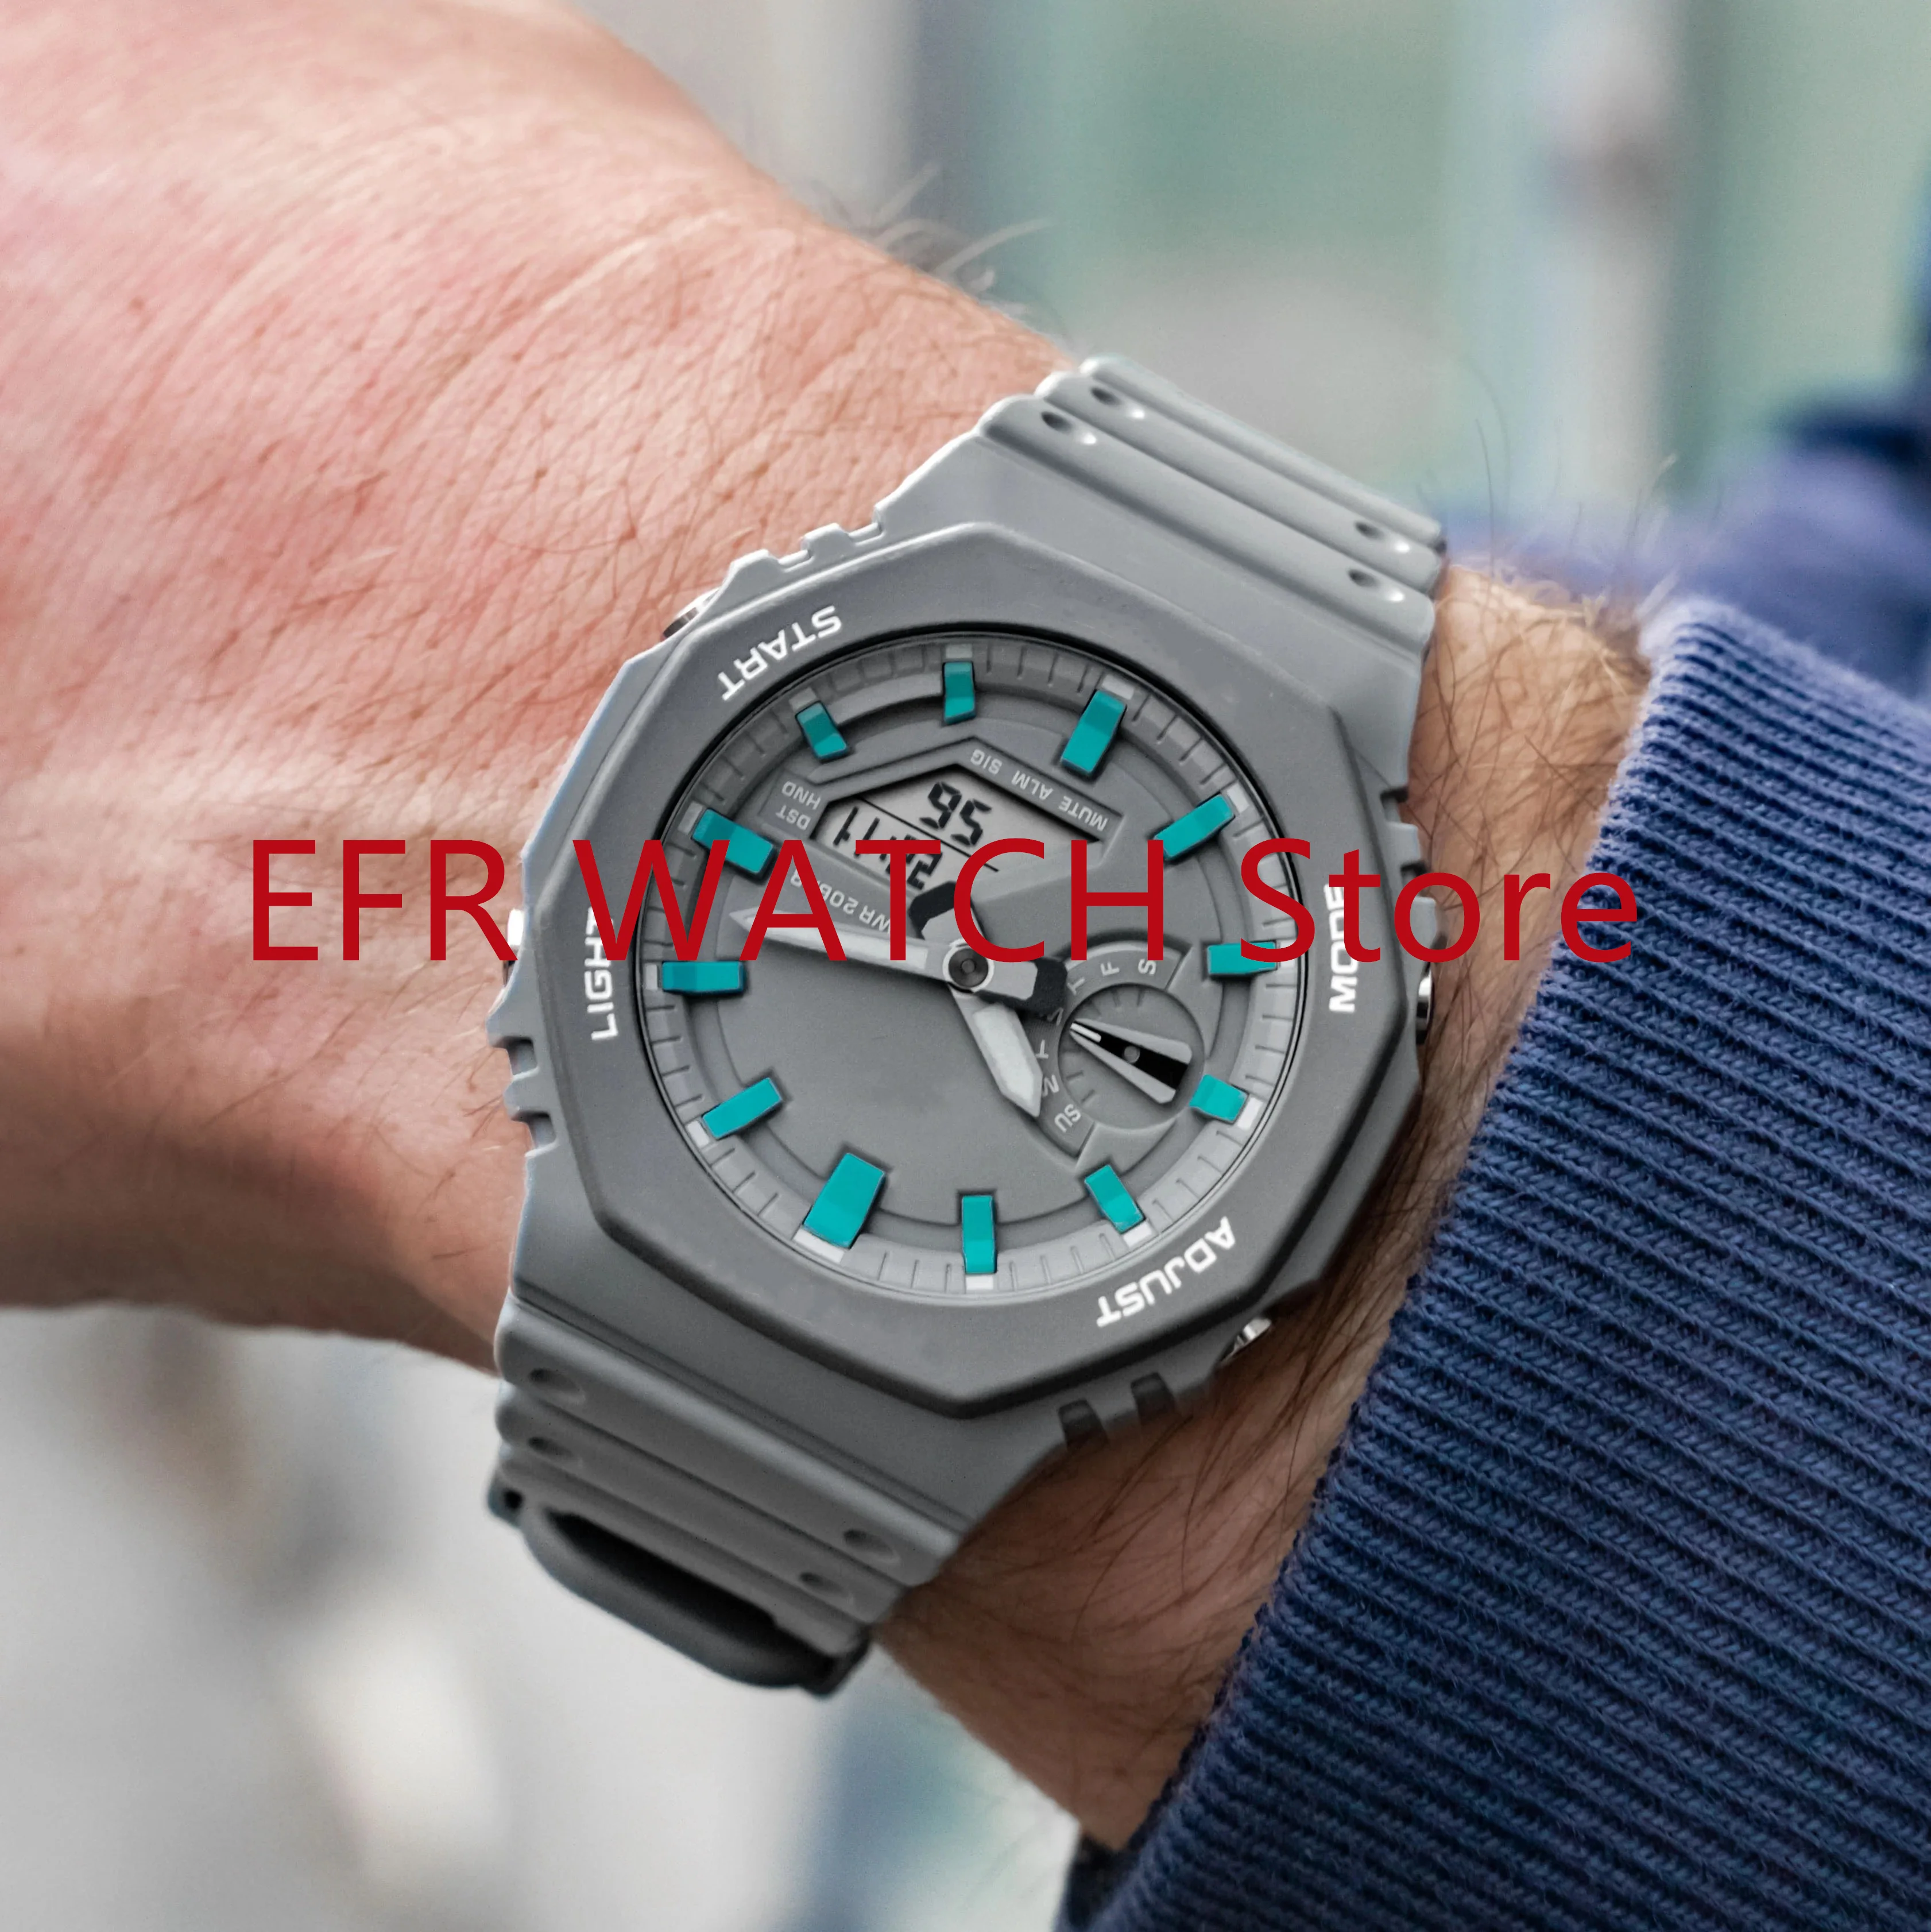 

Оригинальные часы shock Sport, кварцевые цифровые мужские часы 2100, полнофункциональная модель, съемная сборка, серия серый дуб